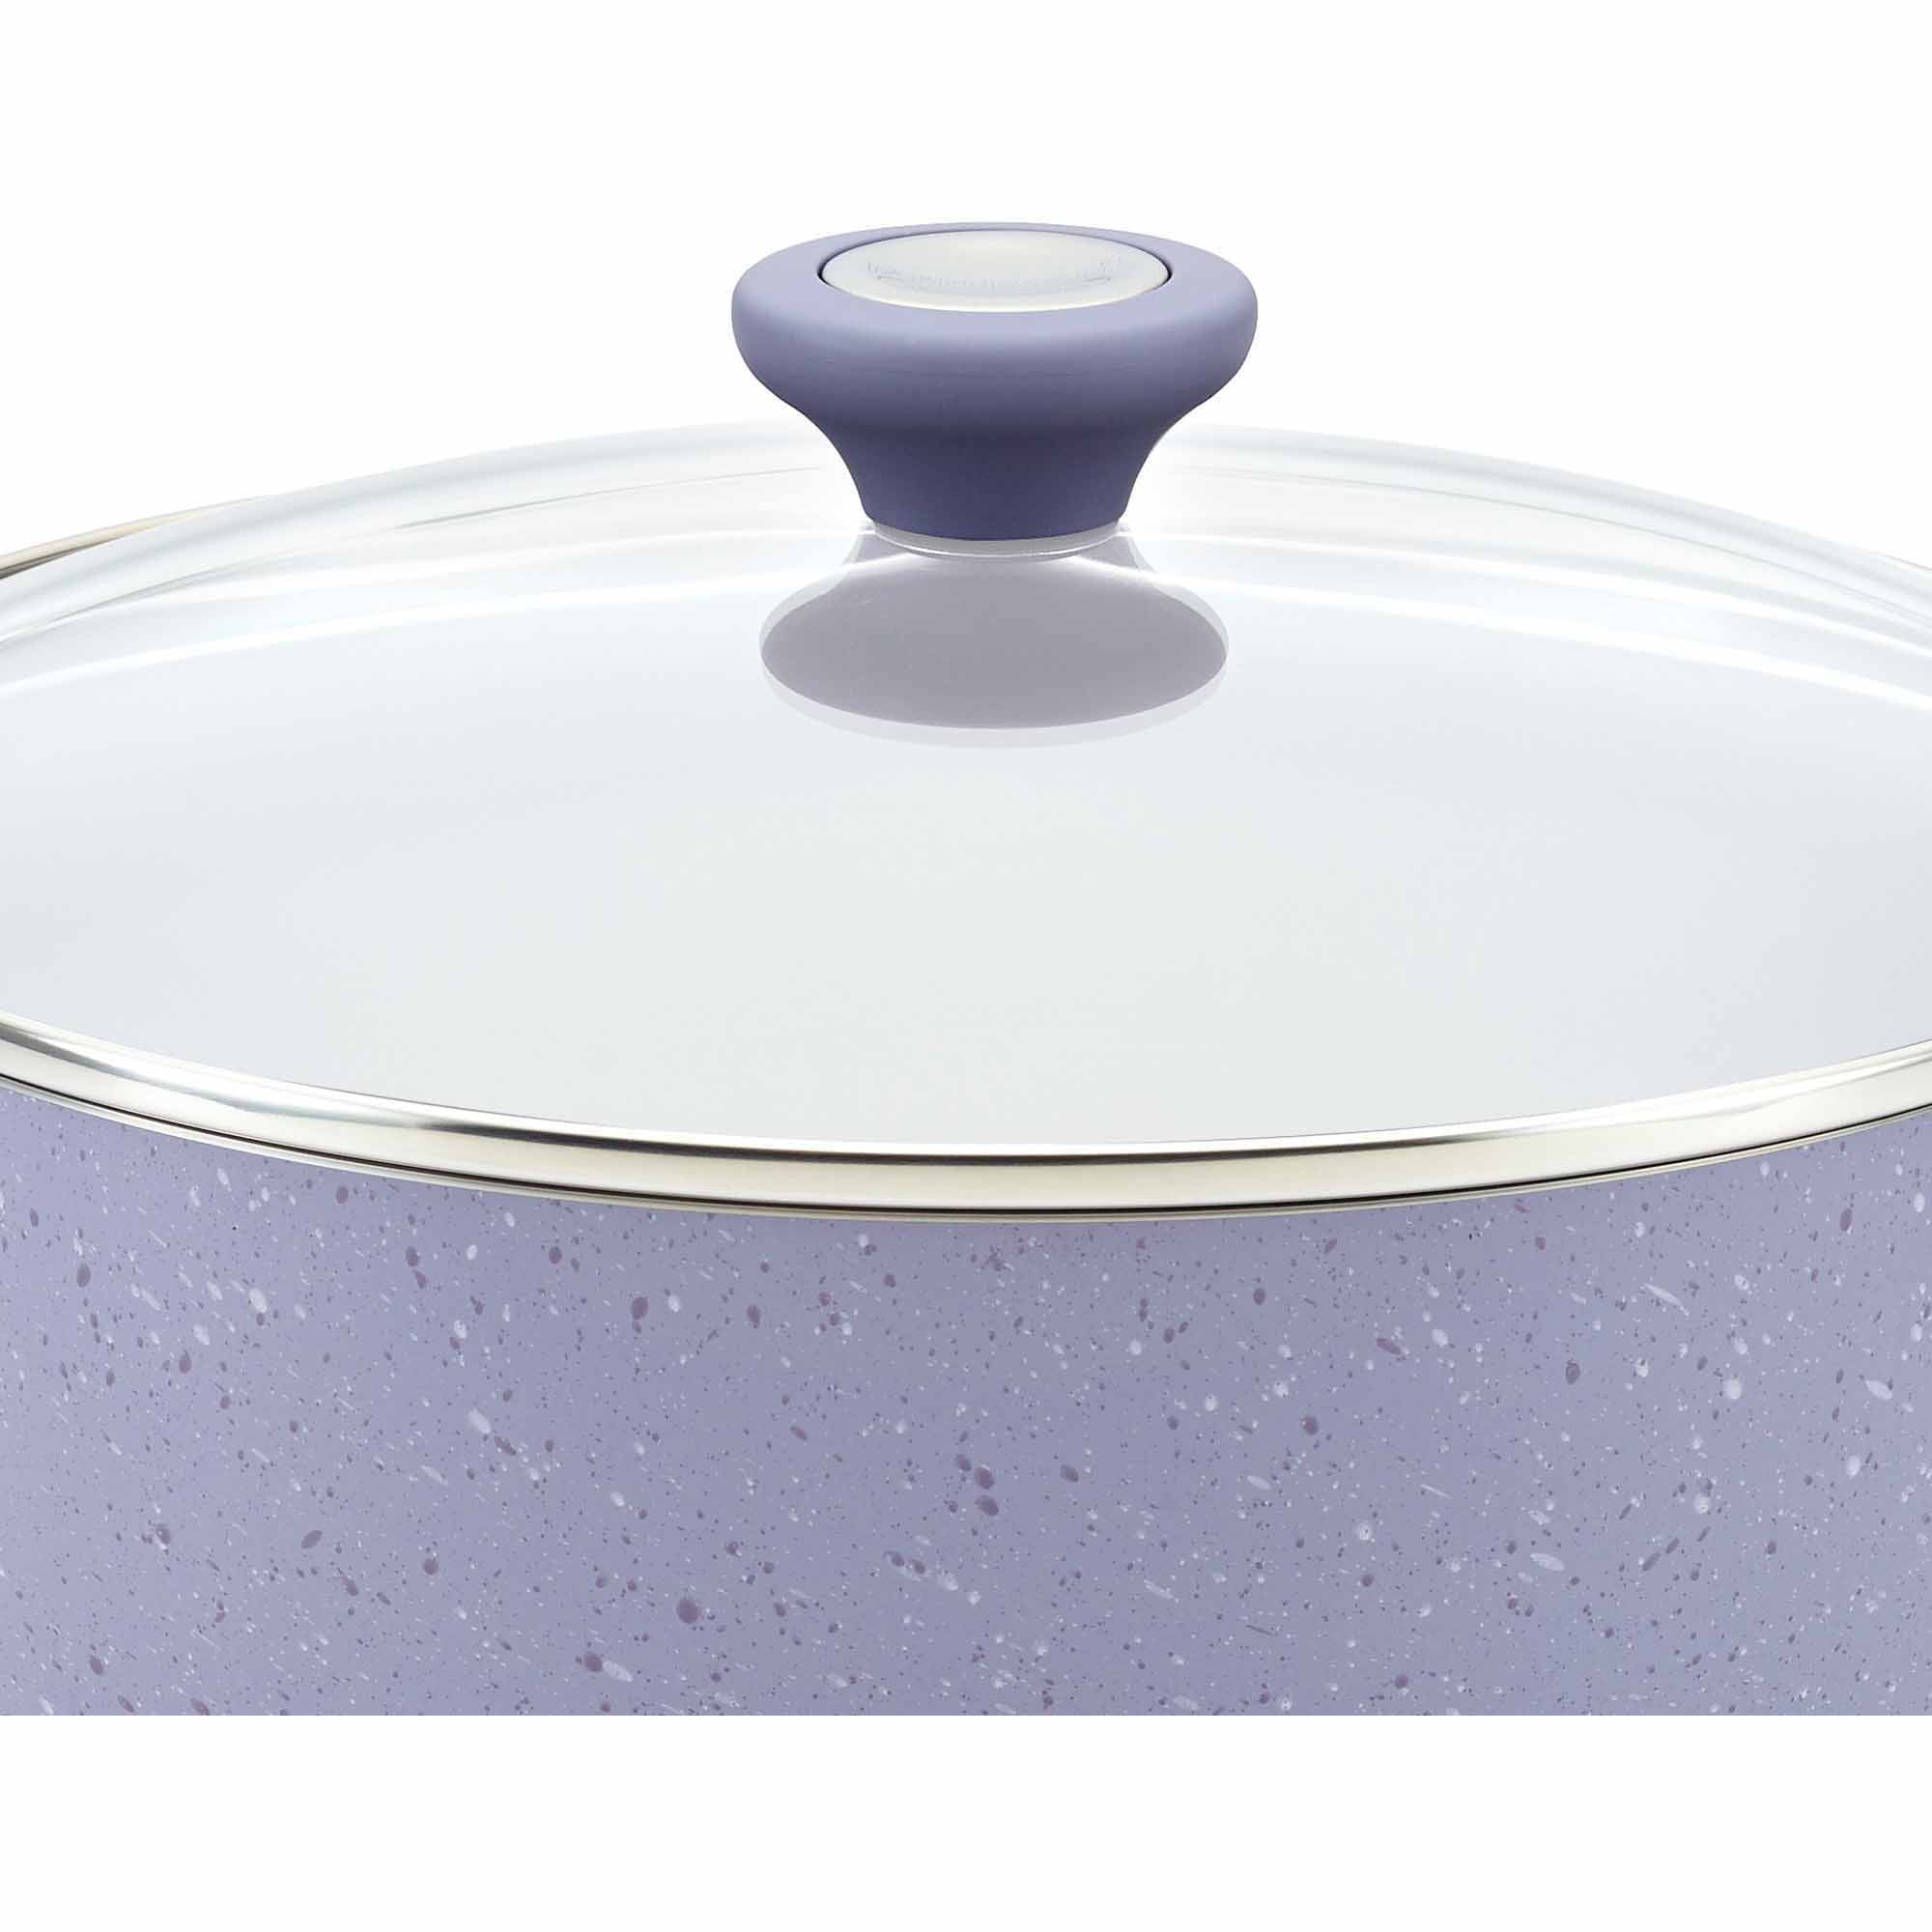 Paula Deen 21623 16pc Cookware Set - Purple, 1 - Kroger